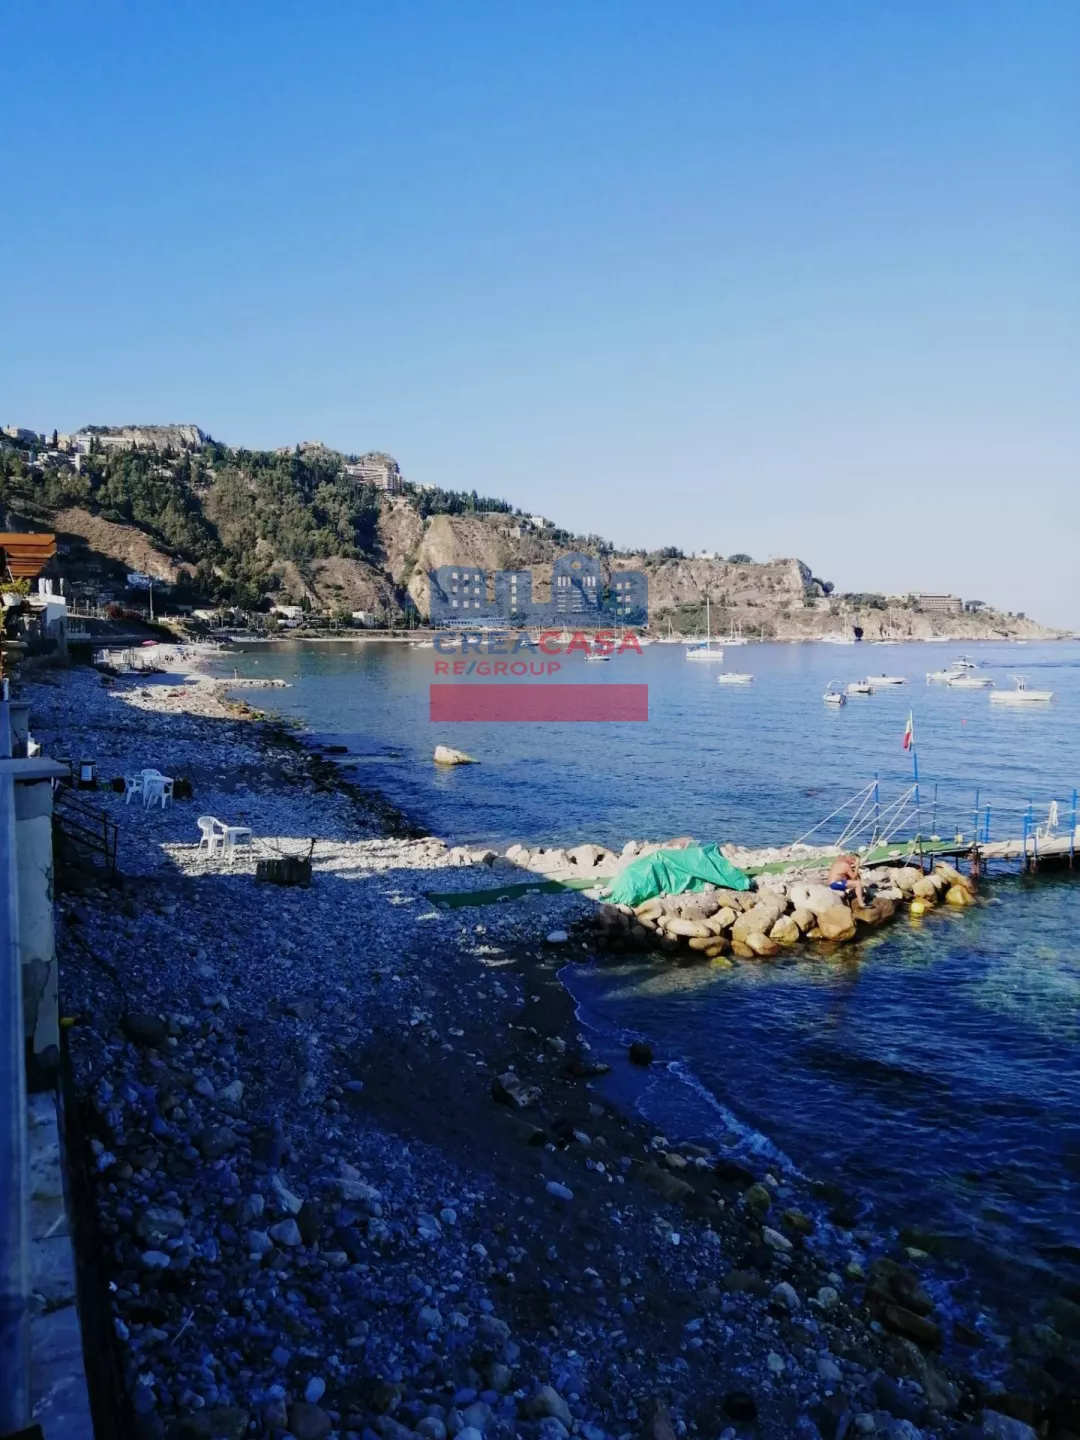 Immagine per Appartamento in vendita a Taormina via Sirina